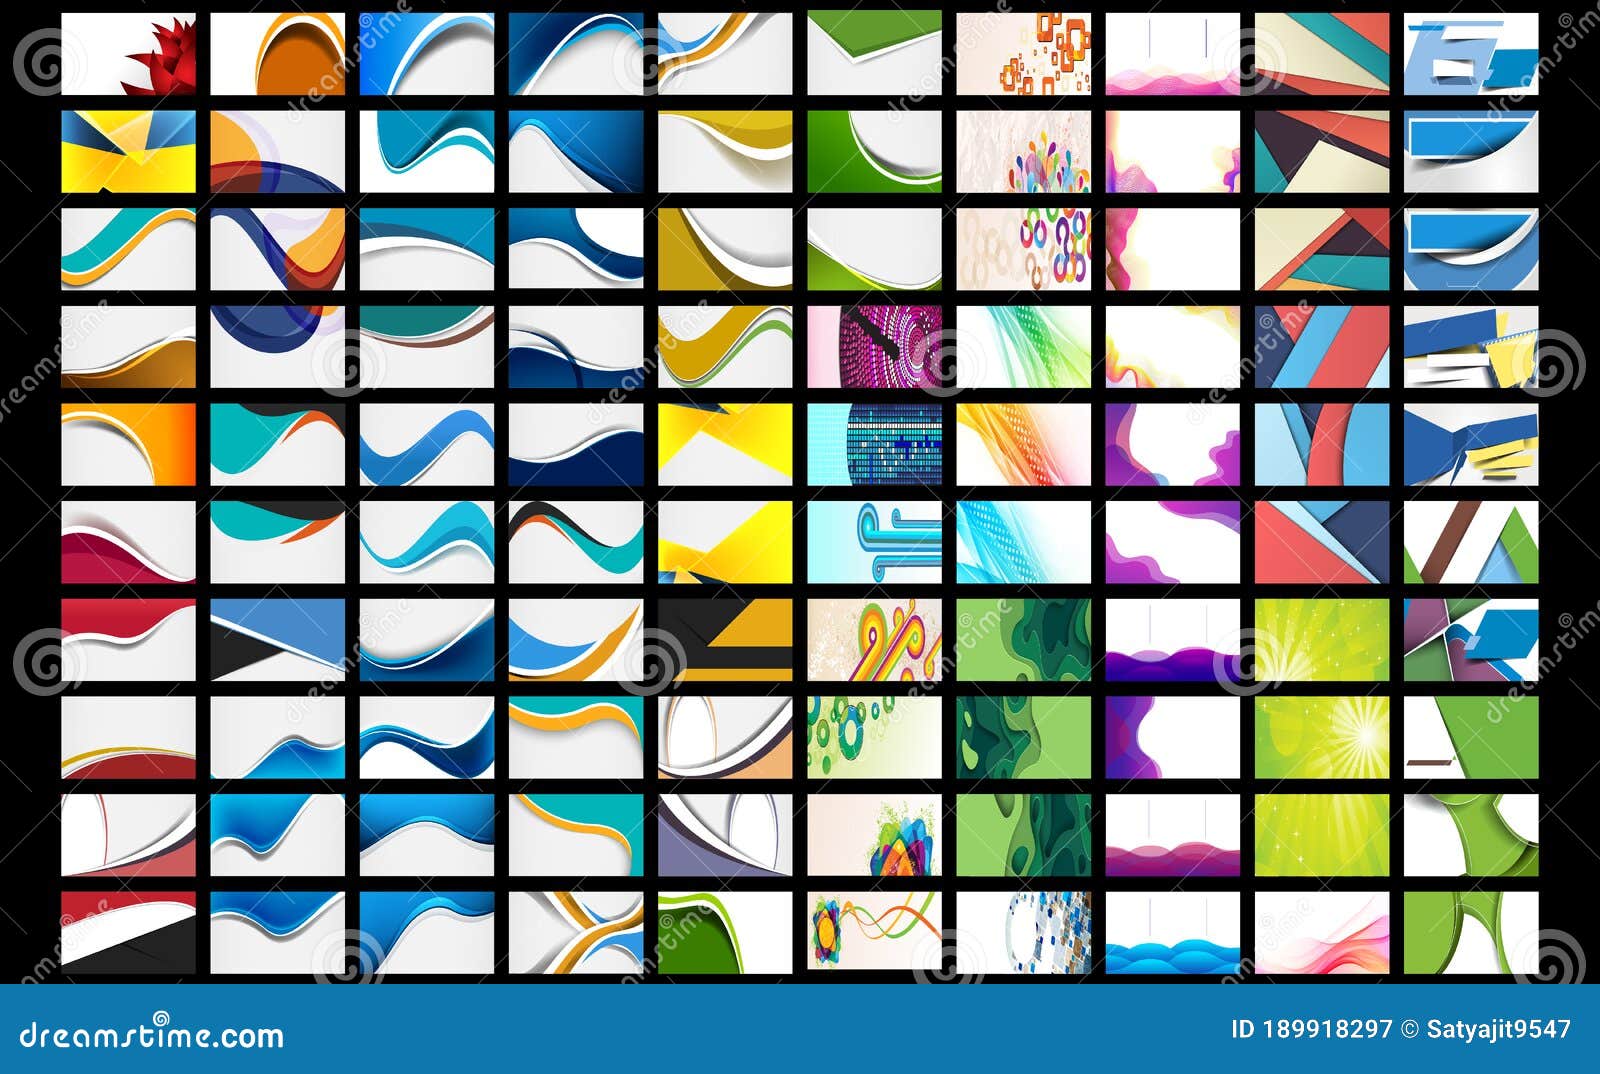 Tải ngay 8000+ Name card background vector free download đầy đủ màu sắc, chất lượng tốt nhất